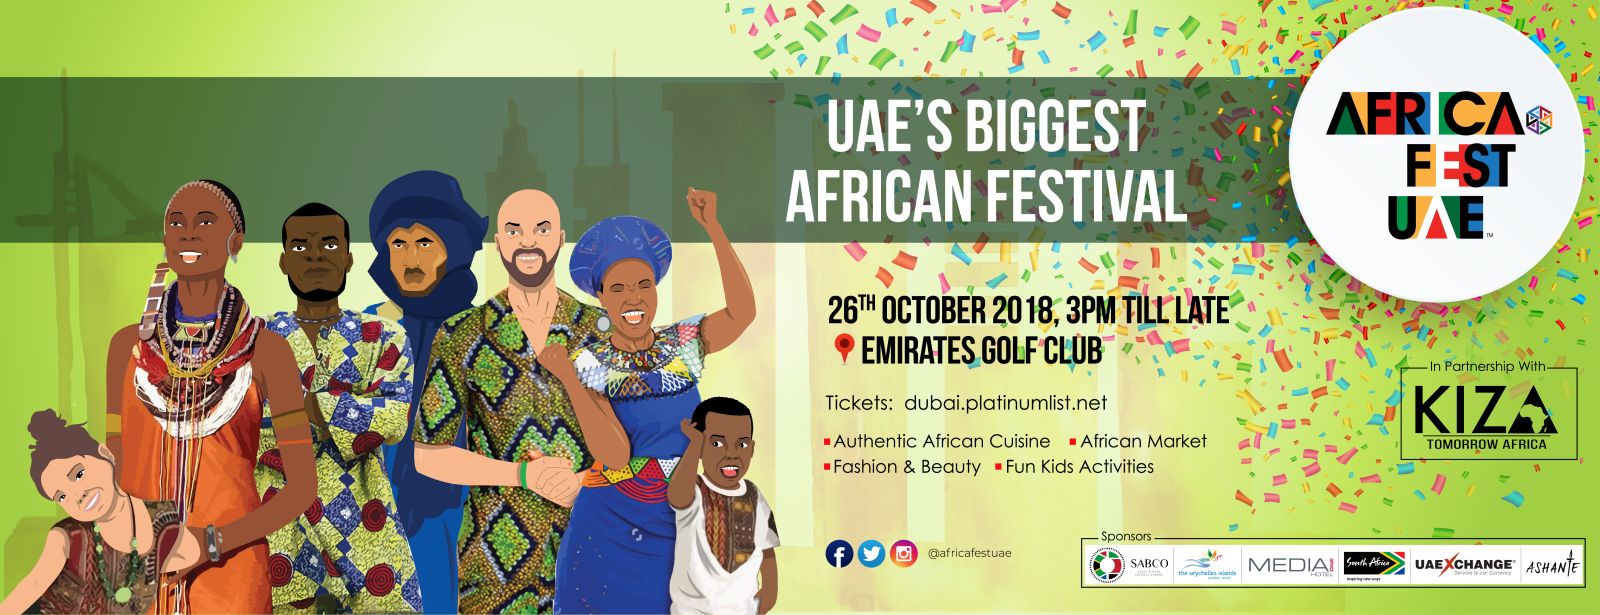 African Festival UAE 2018 - Coming Soon in UAE